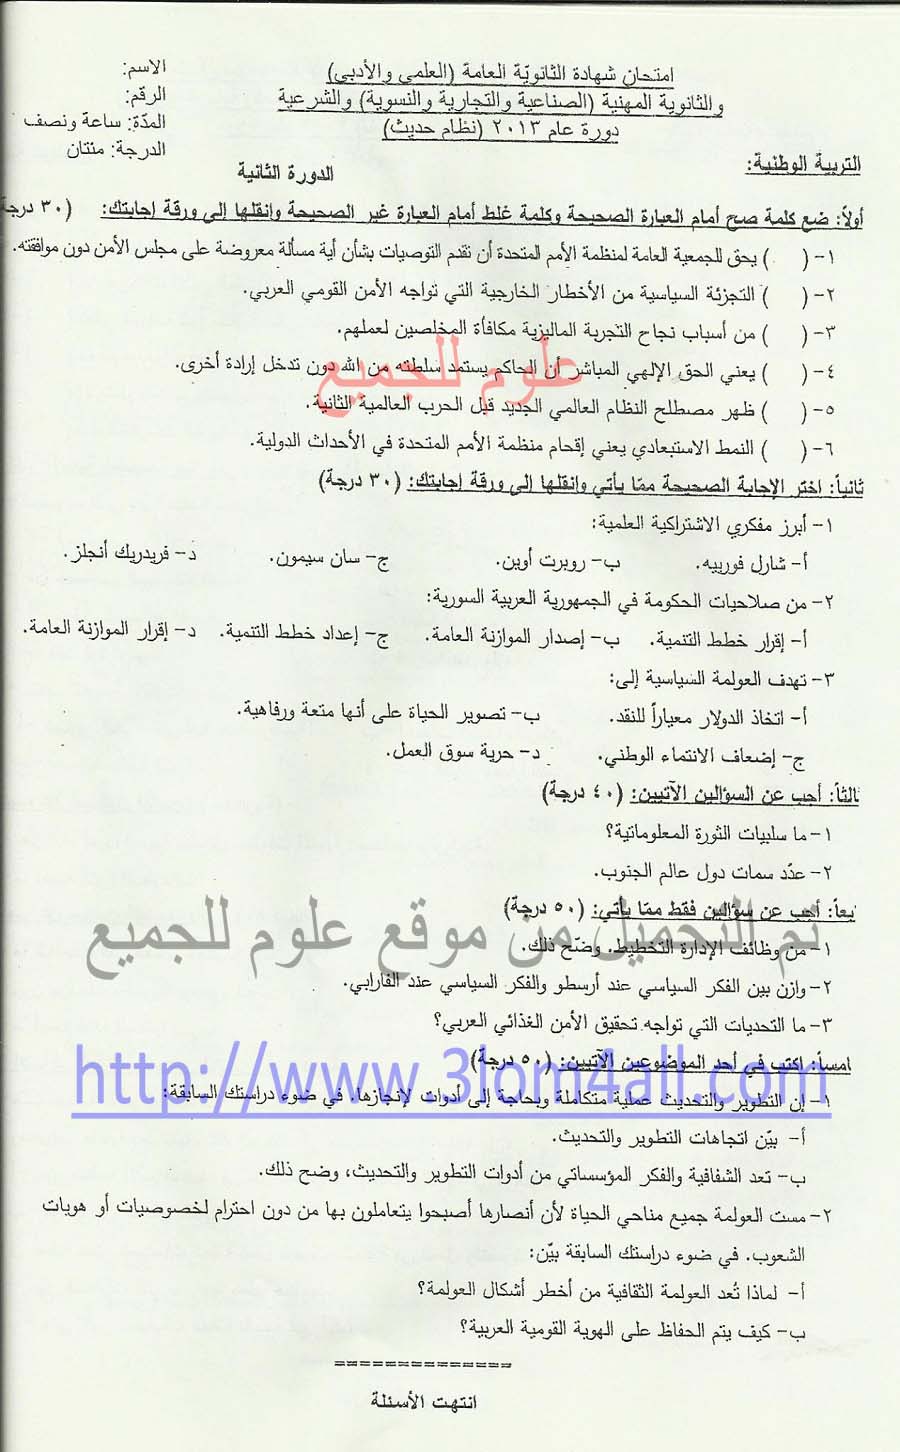 ورقة امتحان الوطنية القومية البكالوريا سوريا 2013 الدورة الثانية التكميلية